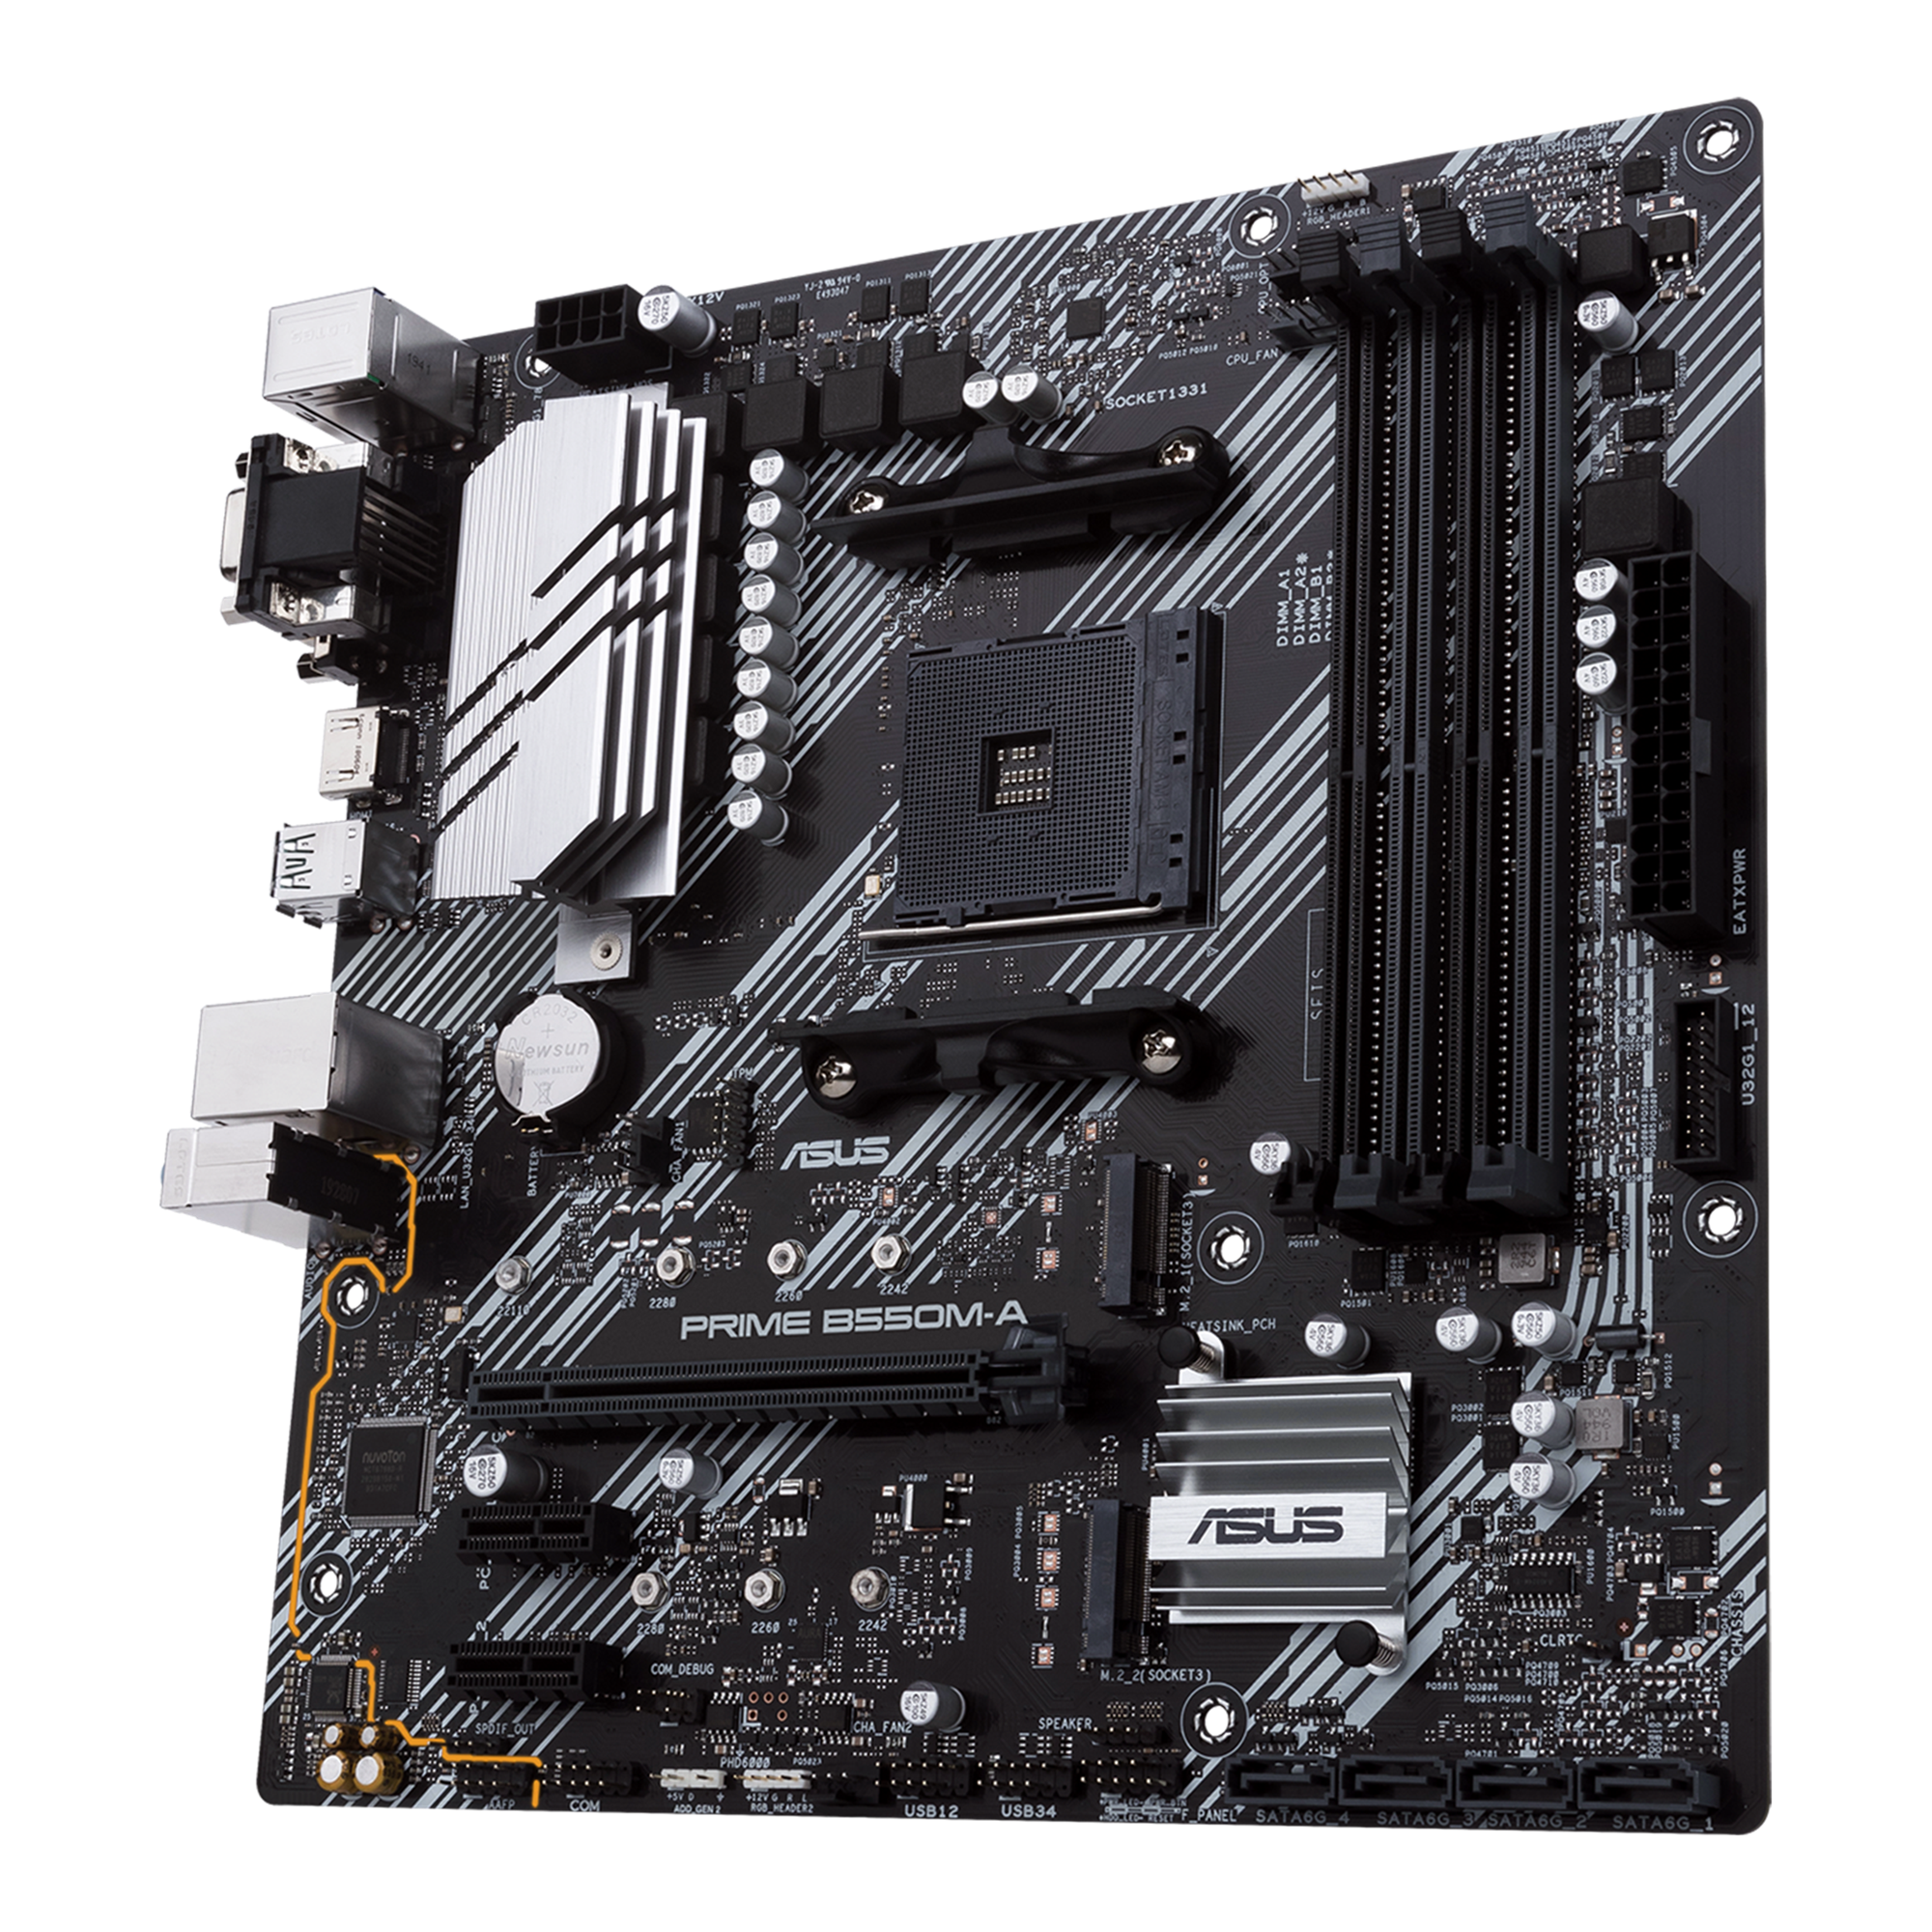 ASUS Prime B550M-A WiFi AMD AM4 Zen 3 Ryzen 5000 & 3rd Gen Ryzen Micro ATX  Motherboard (PCIe 4.0, WiFi 6, ECC Memory, 1Gb LAN, HDMI 2.1/D-Sub